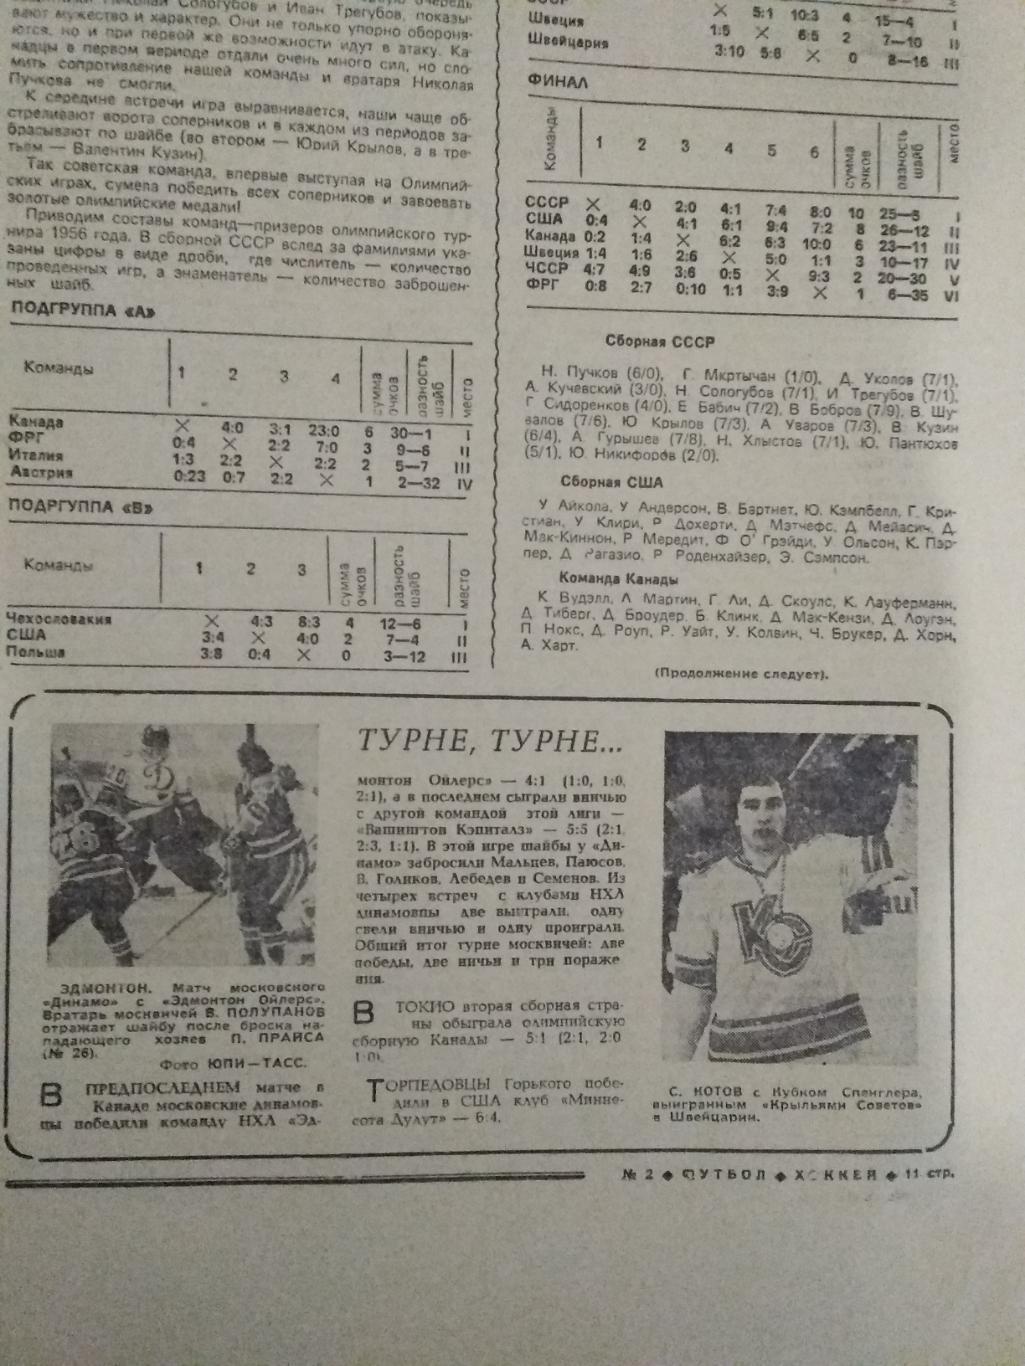 Статья.Хоккей.Клубы НХЛ - Динамо (Москва).Футбол-Хоккей 1980 г.